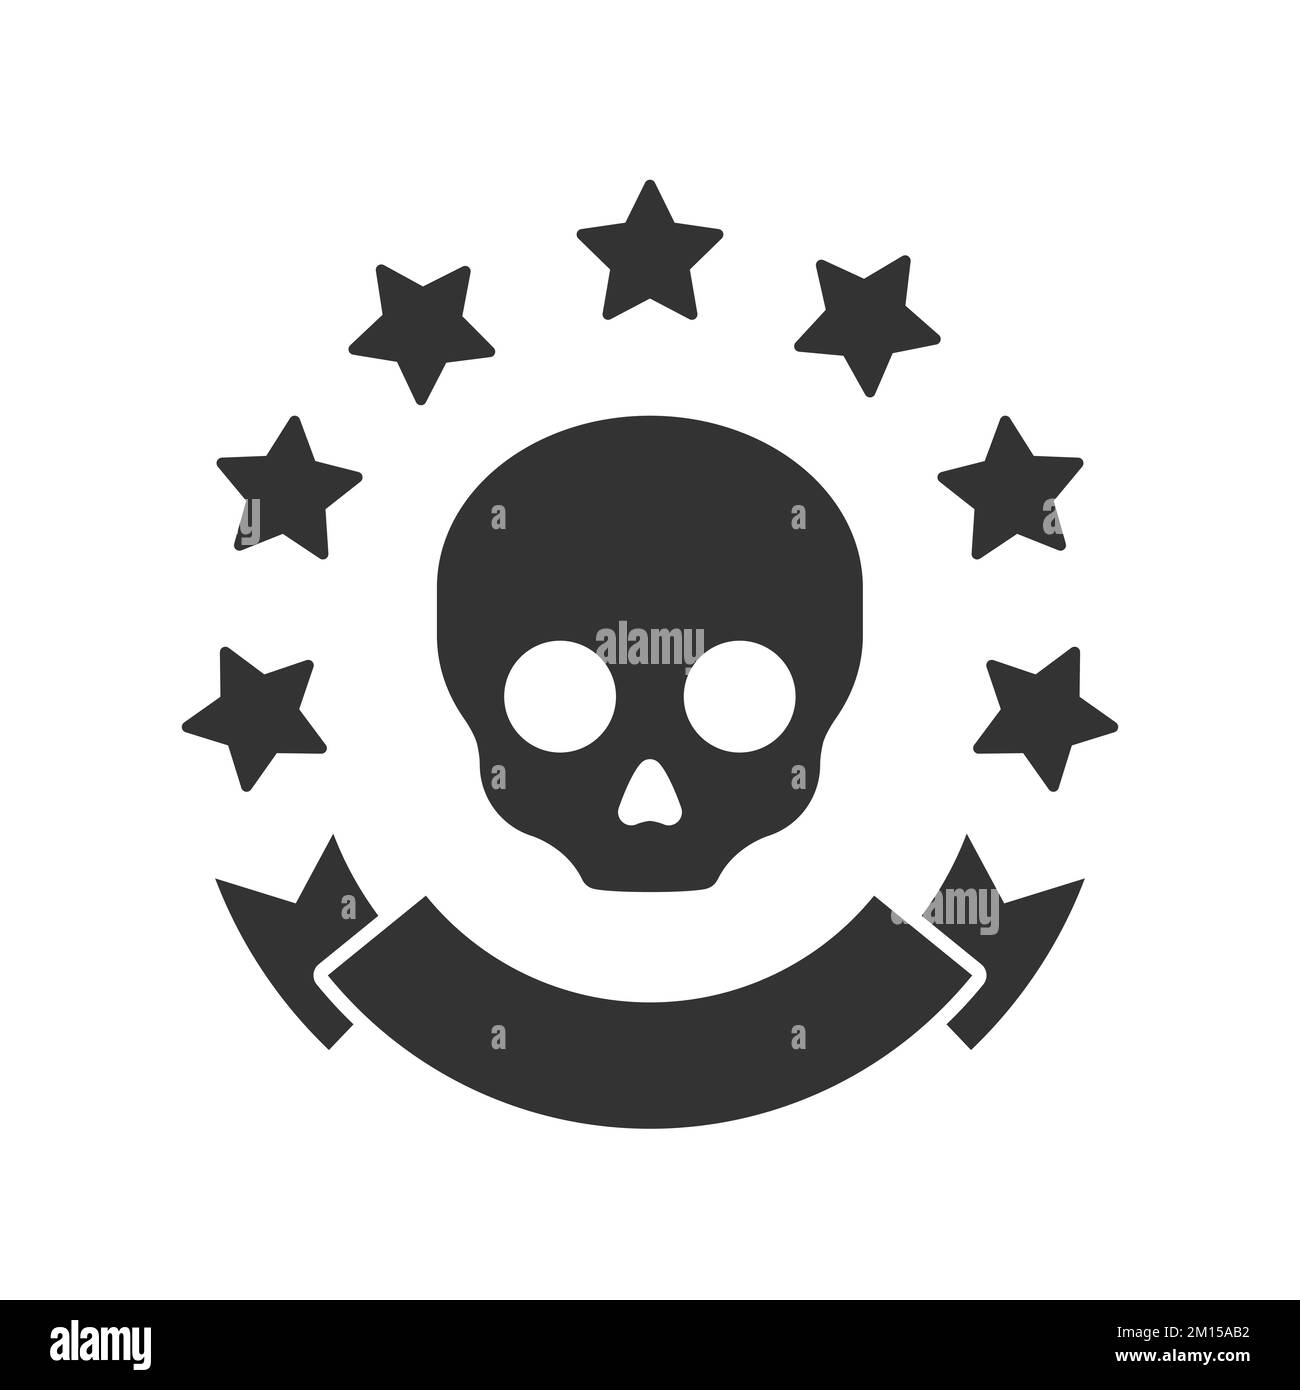 Klassisches Totenkopfdesign für Logos. Piratenlogo mit Sternen und Banner. Vektordarstellung. Stock Vektor